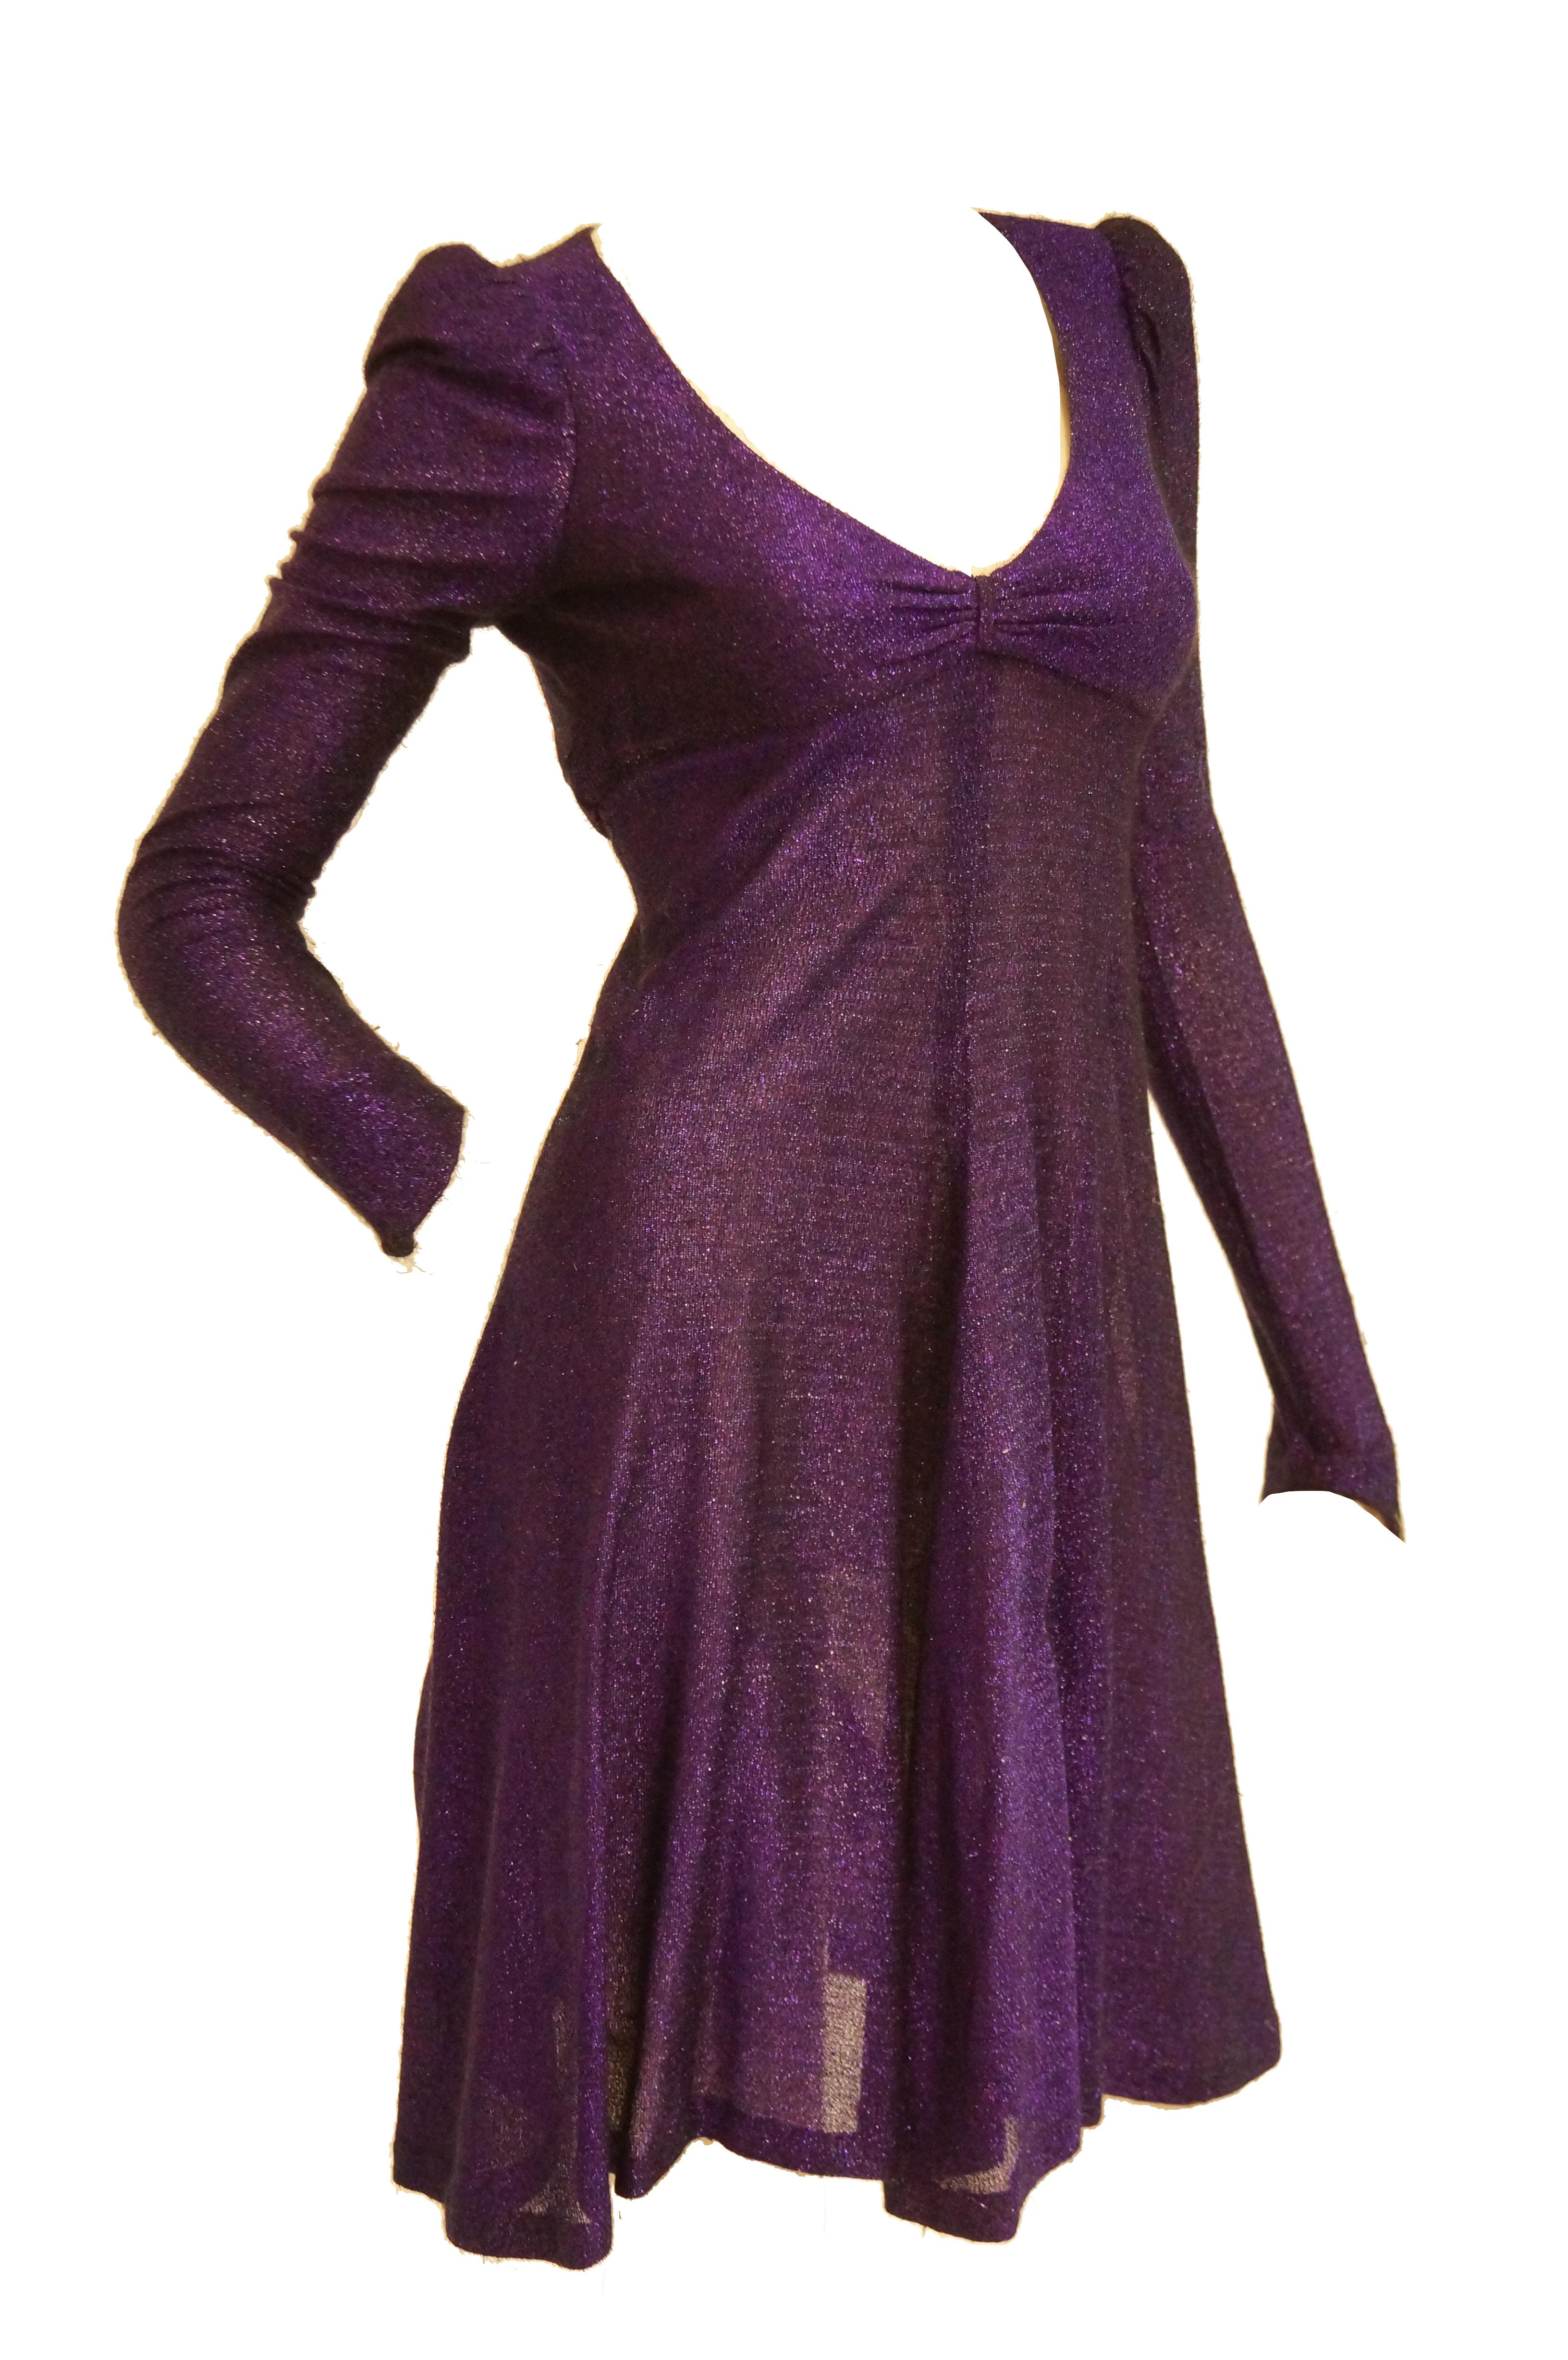 biba dress 1967